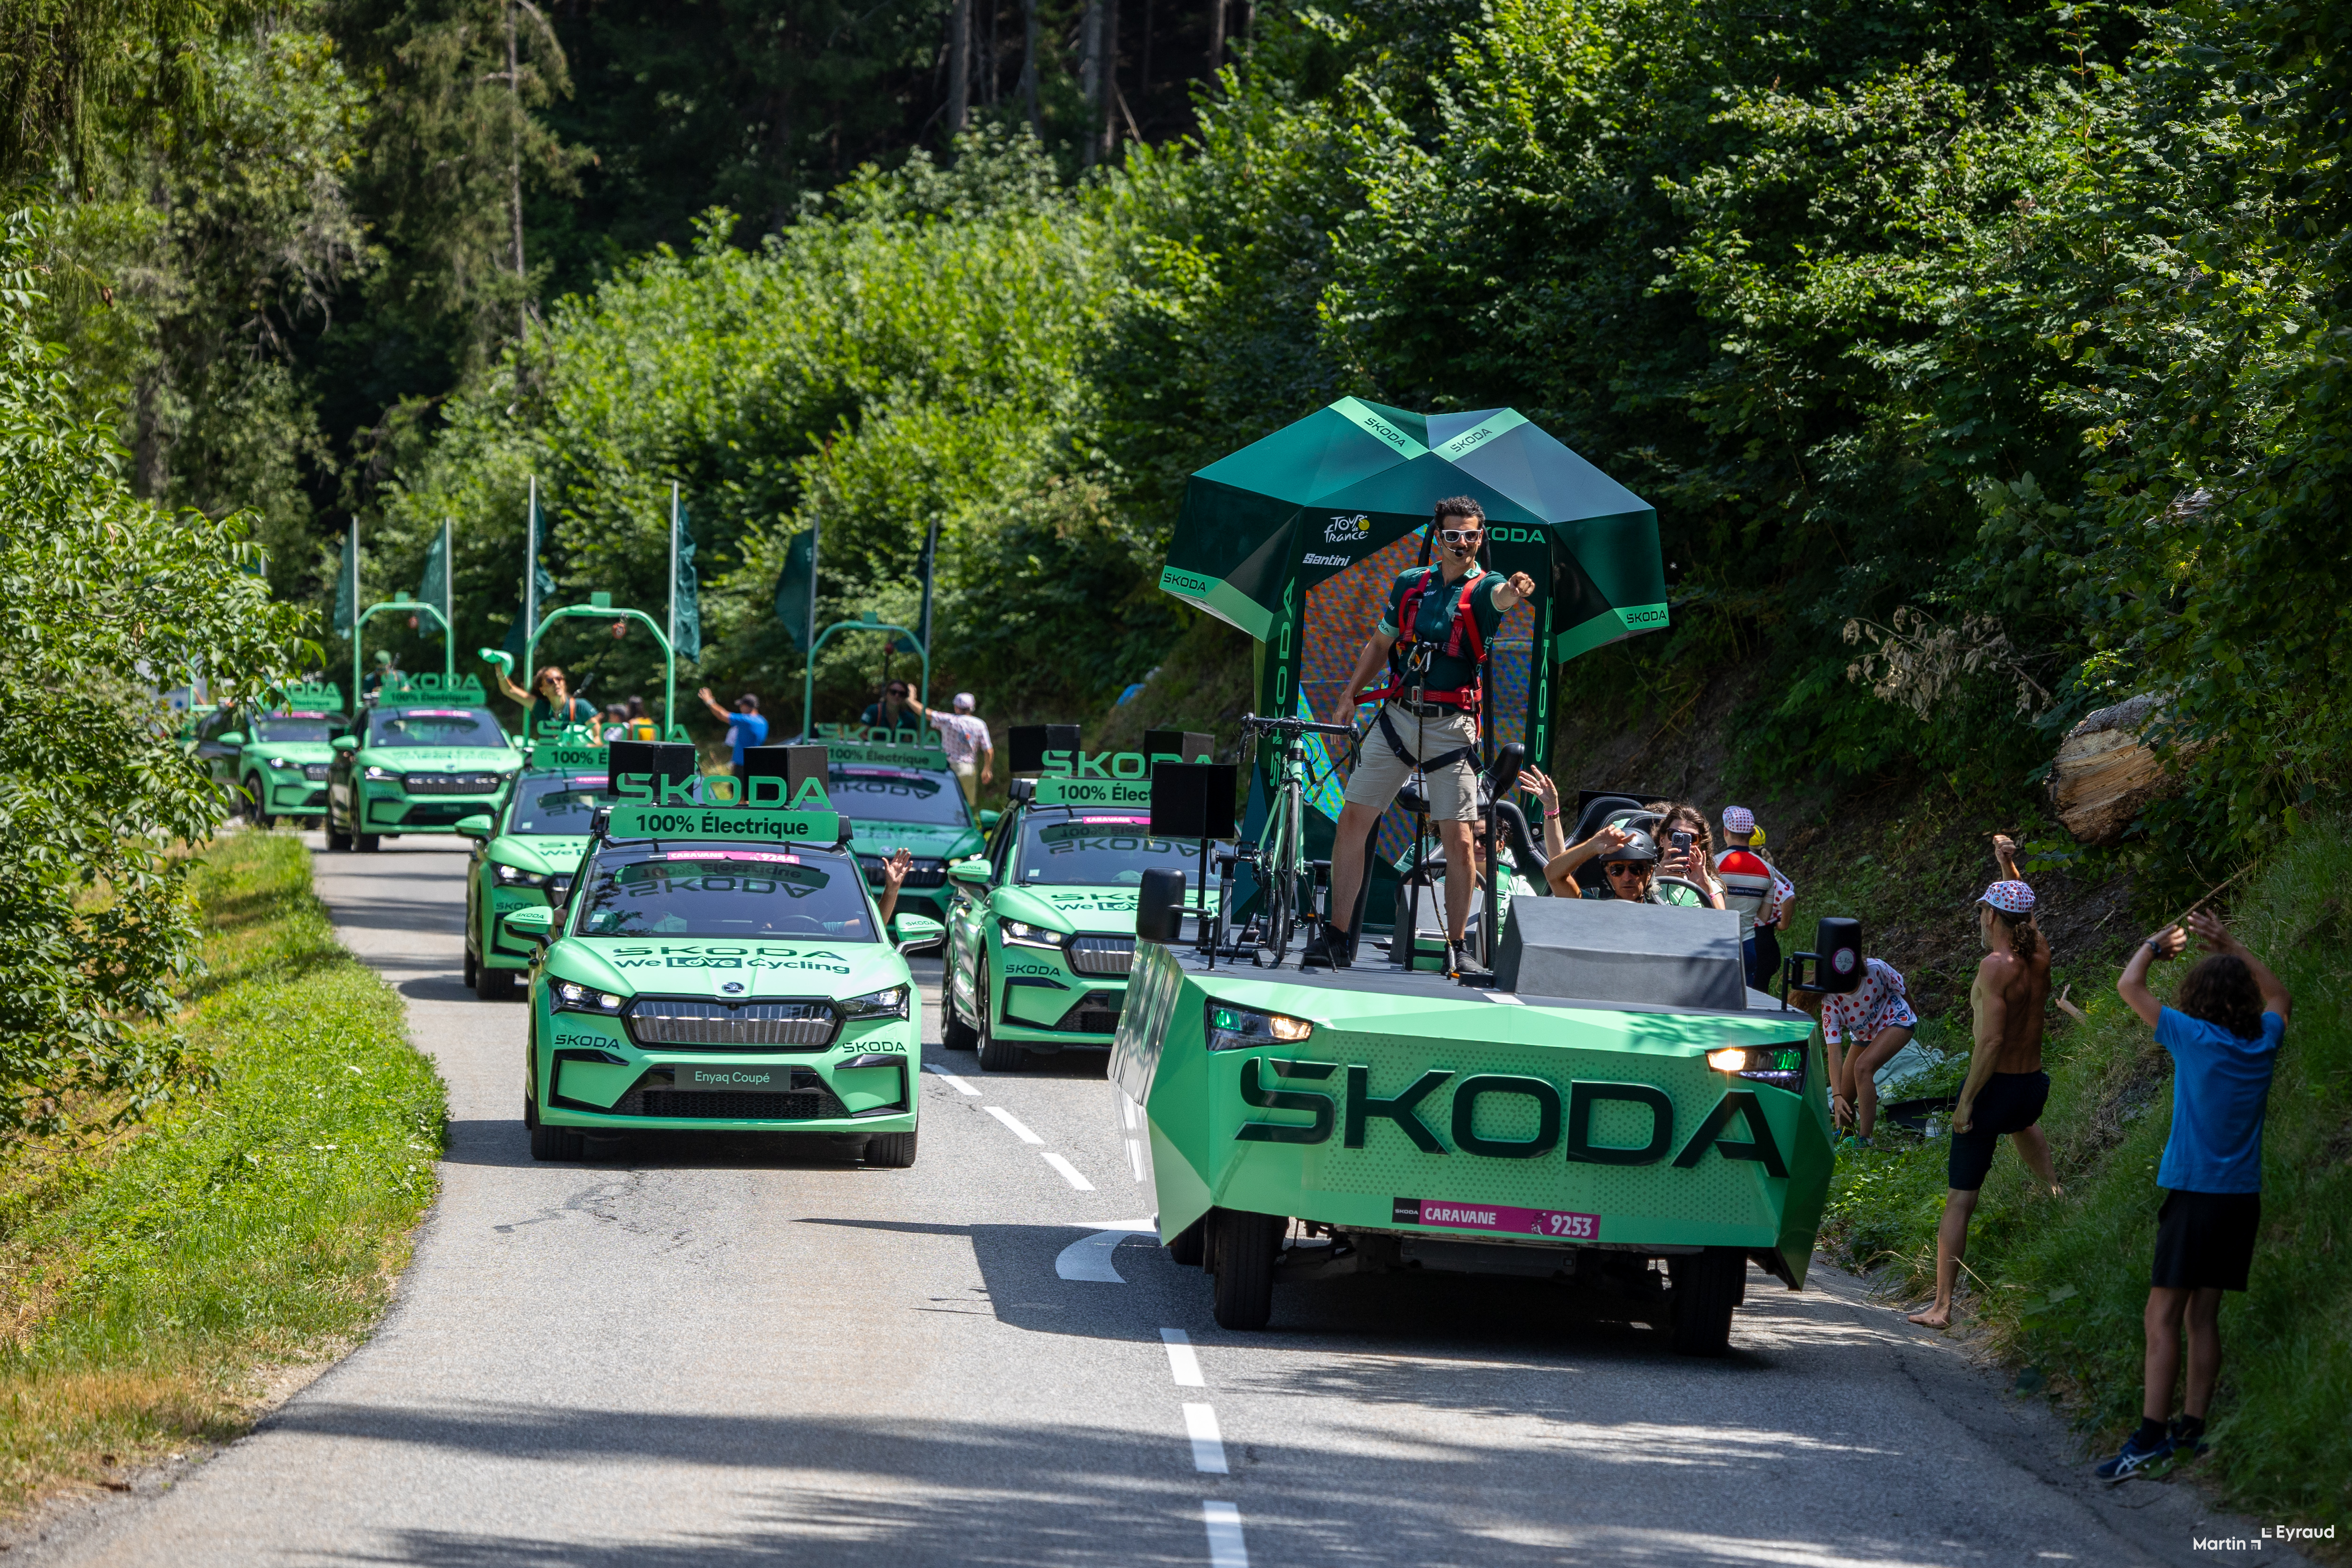 Tour de France Caravane publicitaire avec Skoda